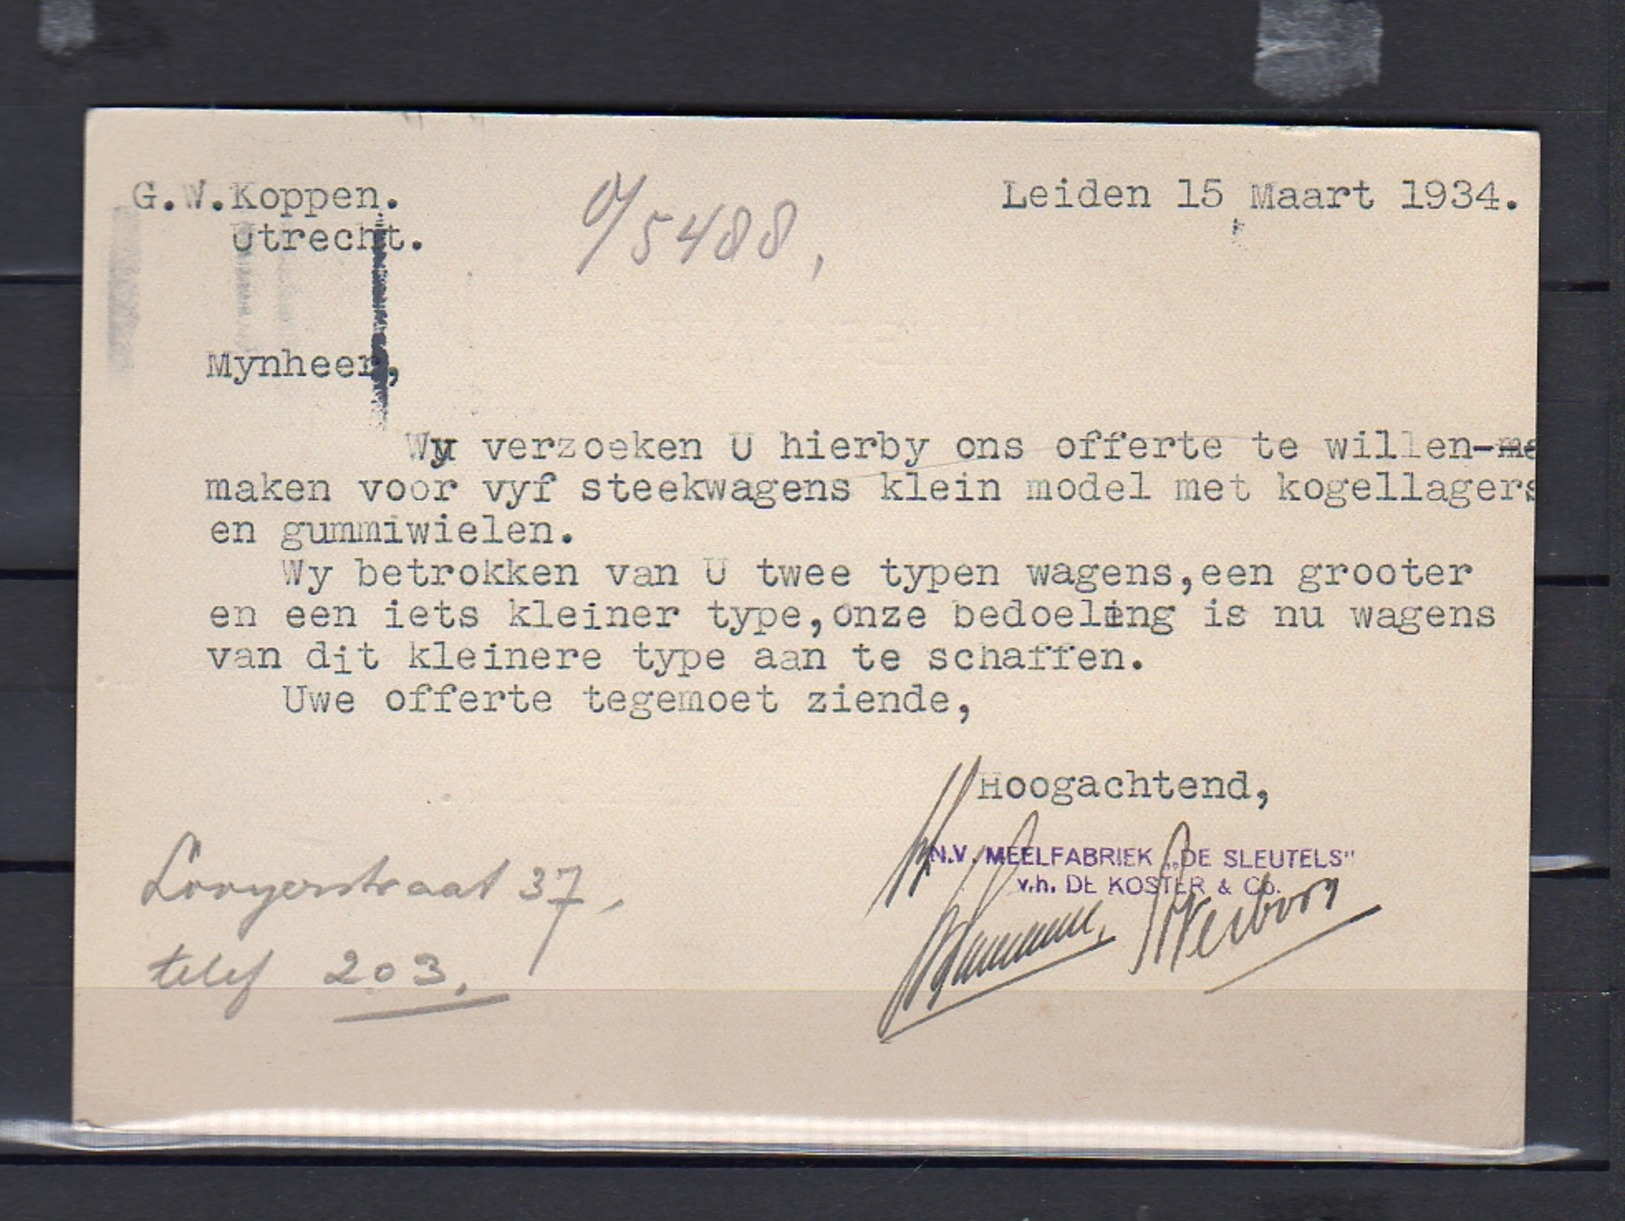 1934 Meelfabriek De Sleutels De Koster & Co Leiden  > Rollend Materieel Oude Gracht 387 Utrecht  (eg28) - Cartas & Documentos